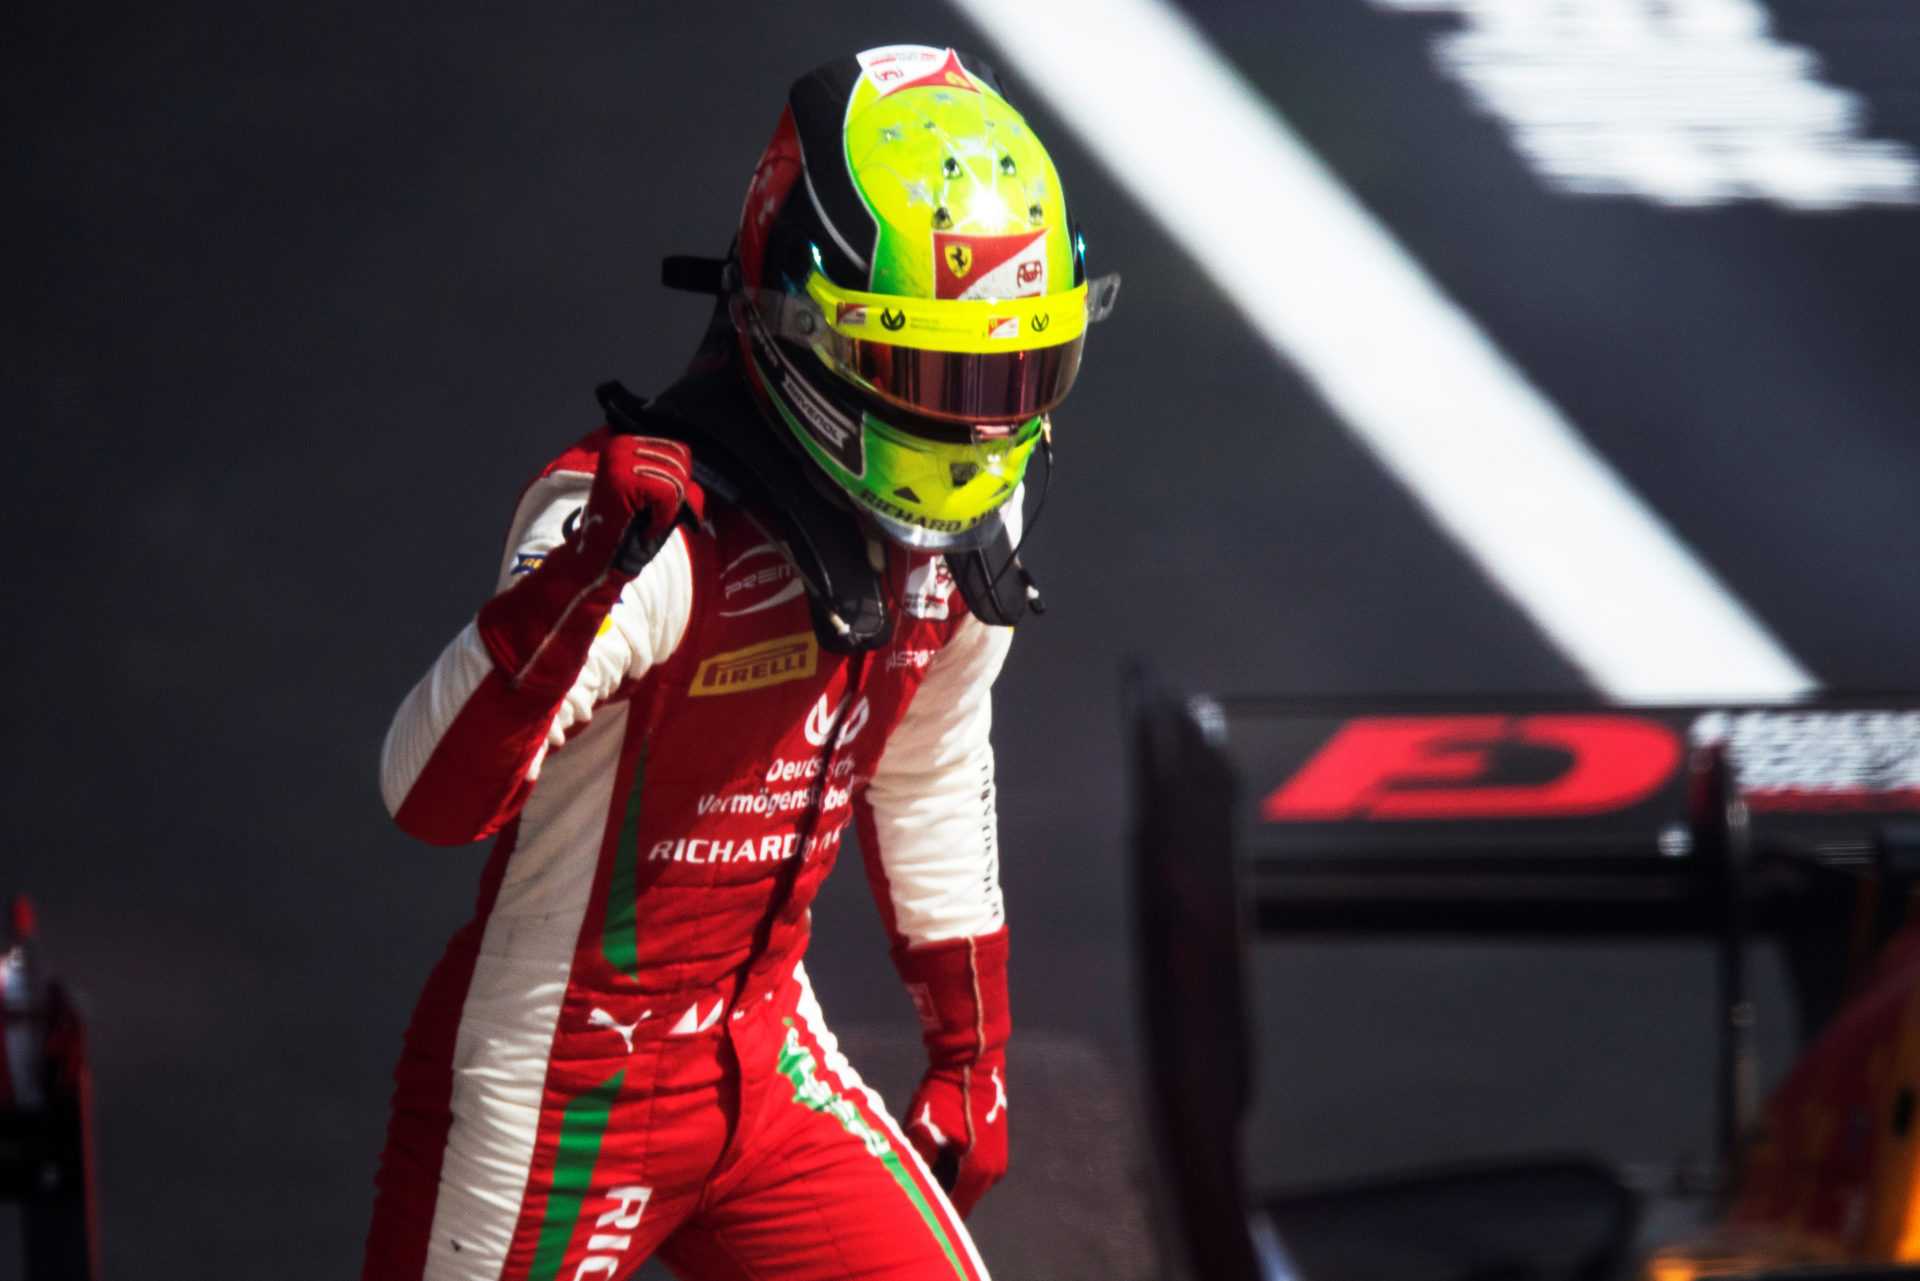 La victoire de Mick Schumacher à la F2 Sotchi Feature Race est menacée par l'appel de Rivals Mull